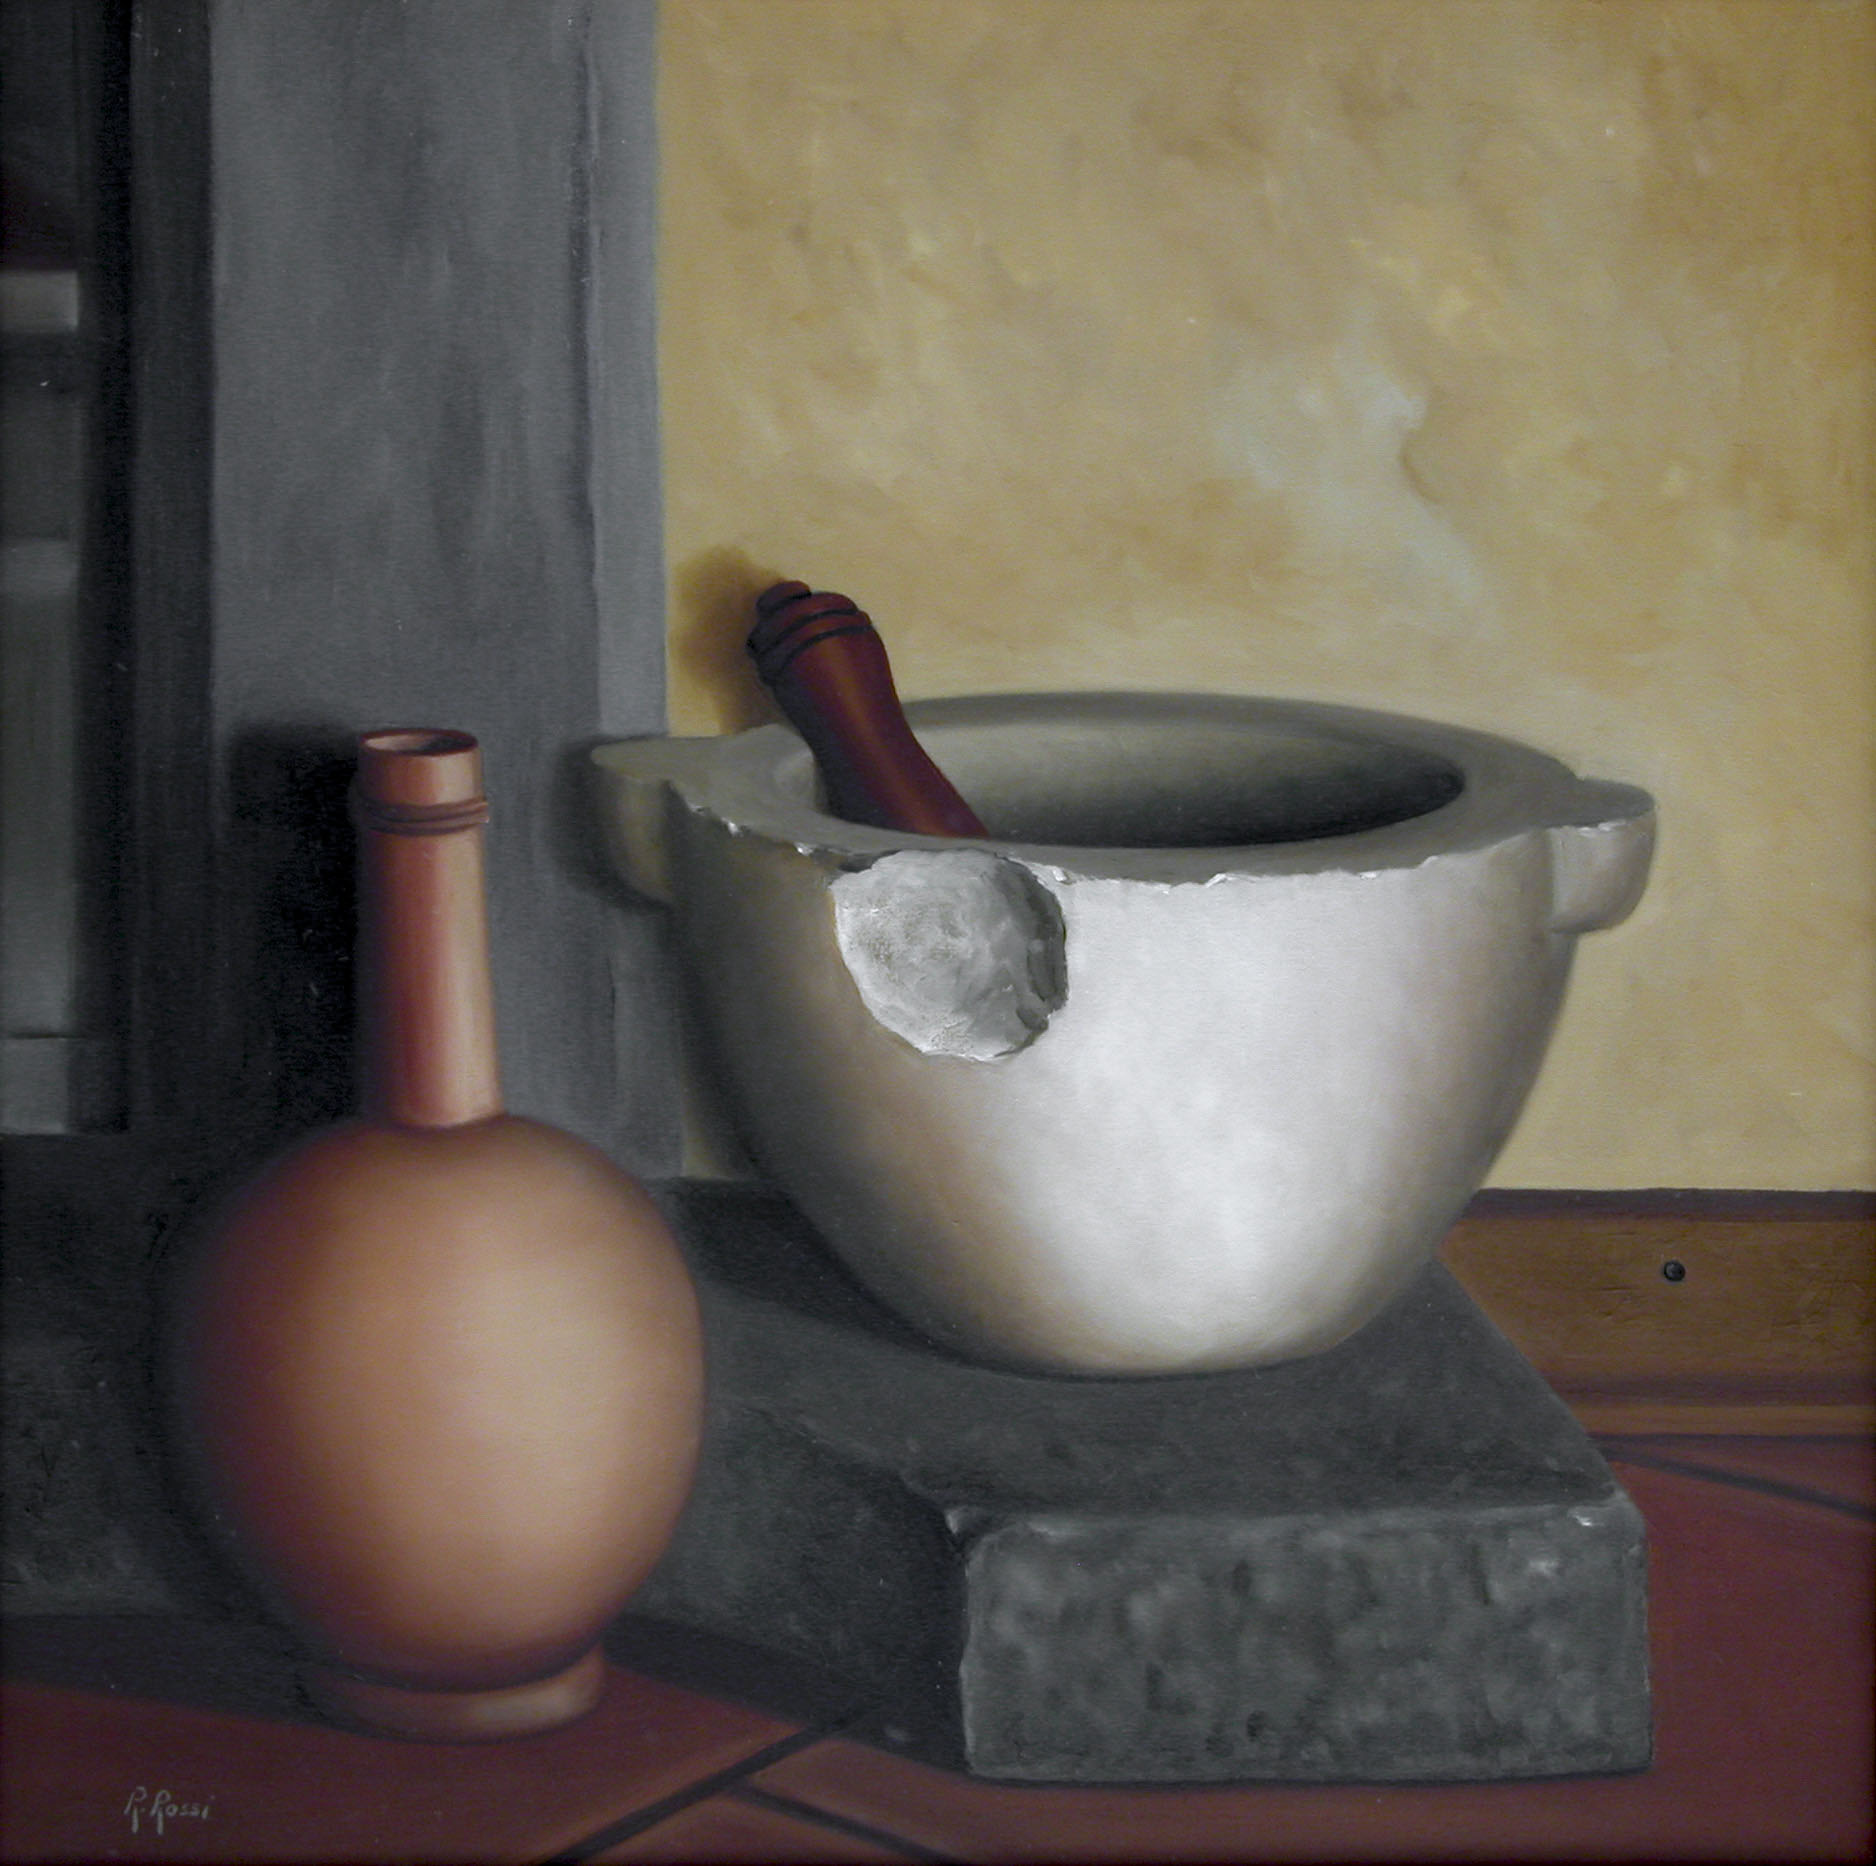 2008 roberta rossi – Vaso e mortaio – olio su tela – 40 x 40